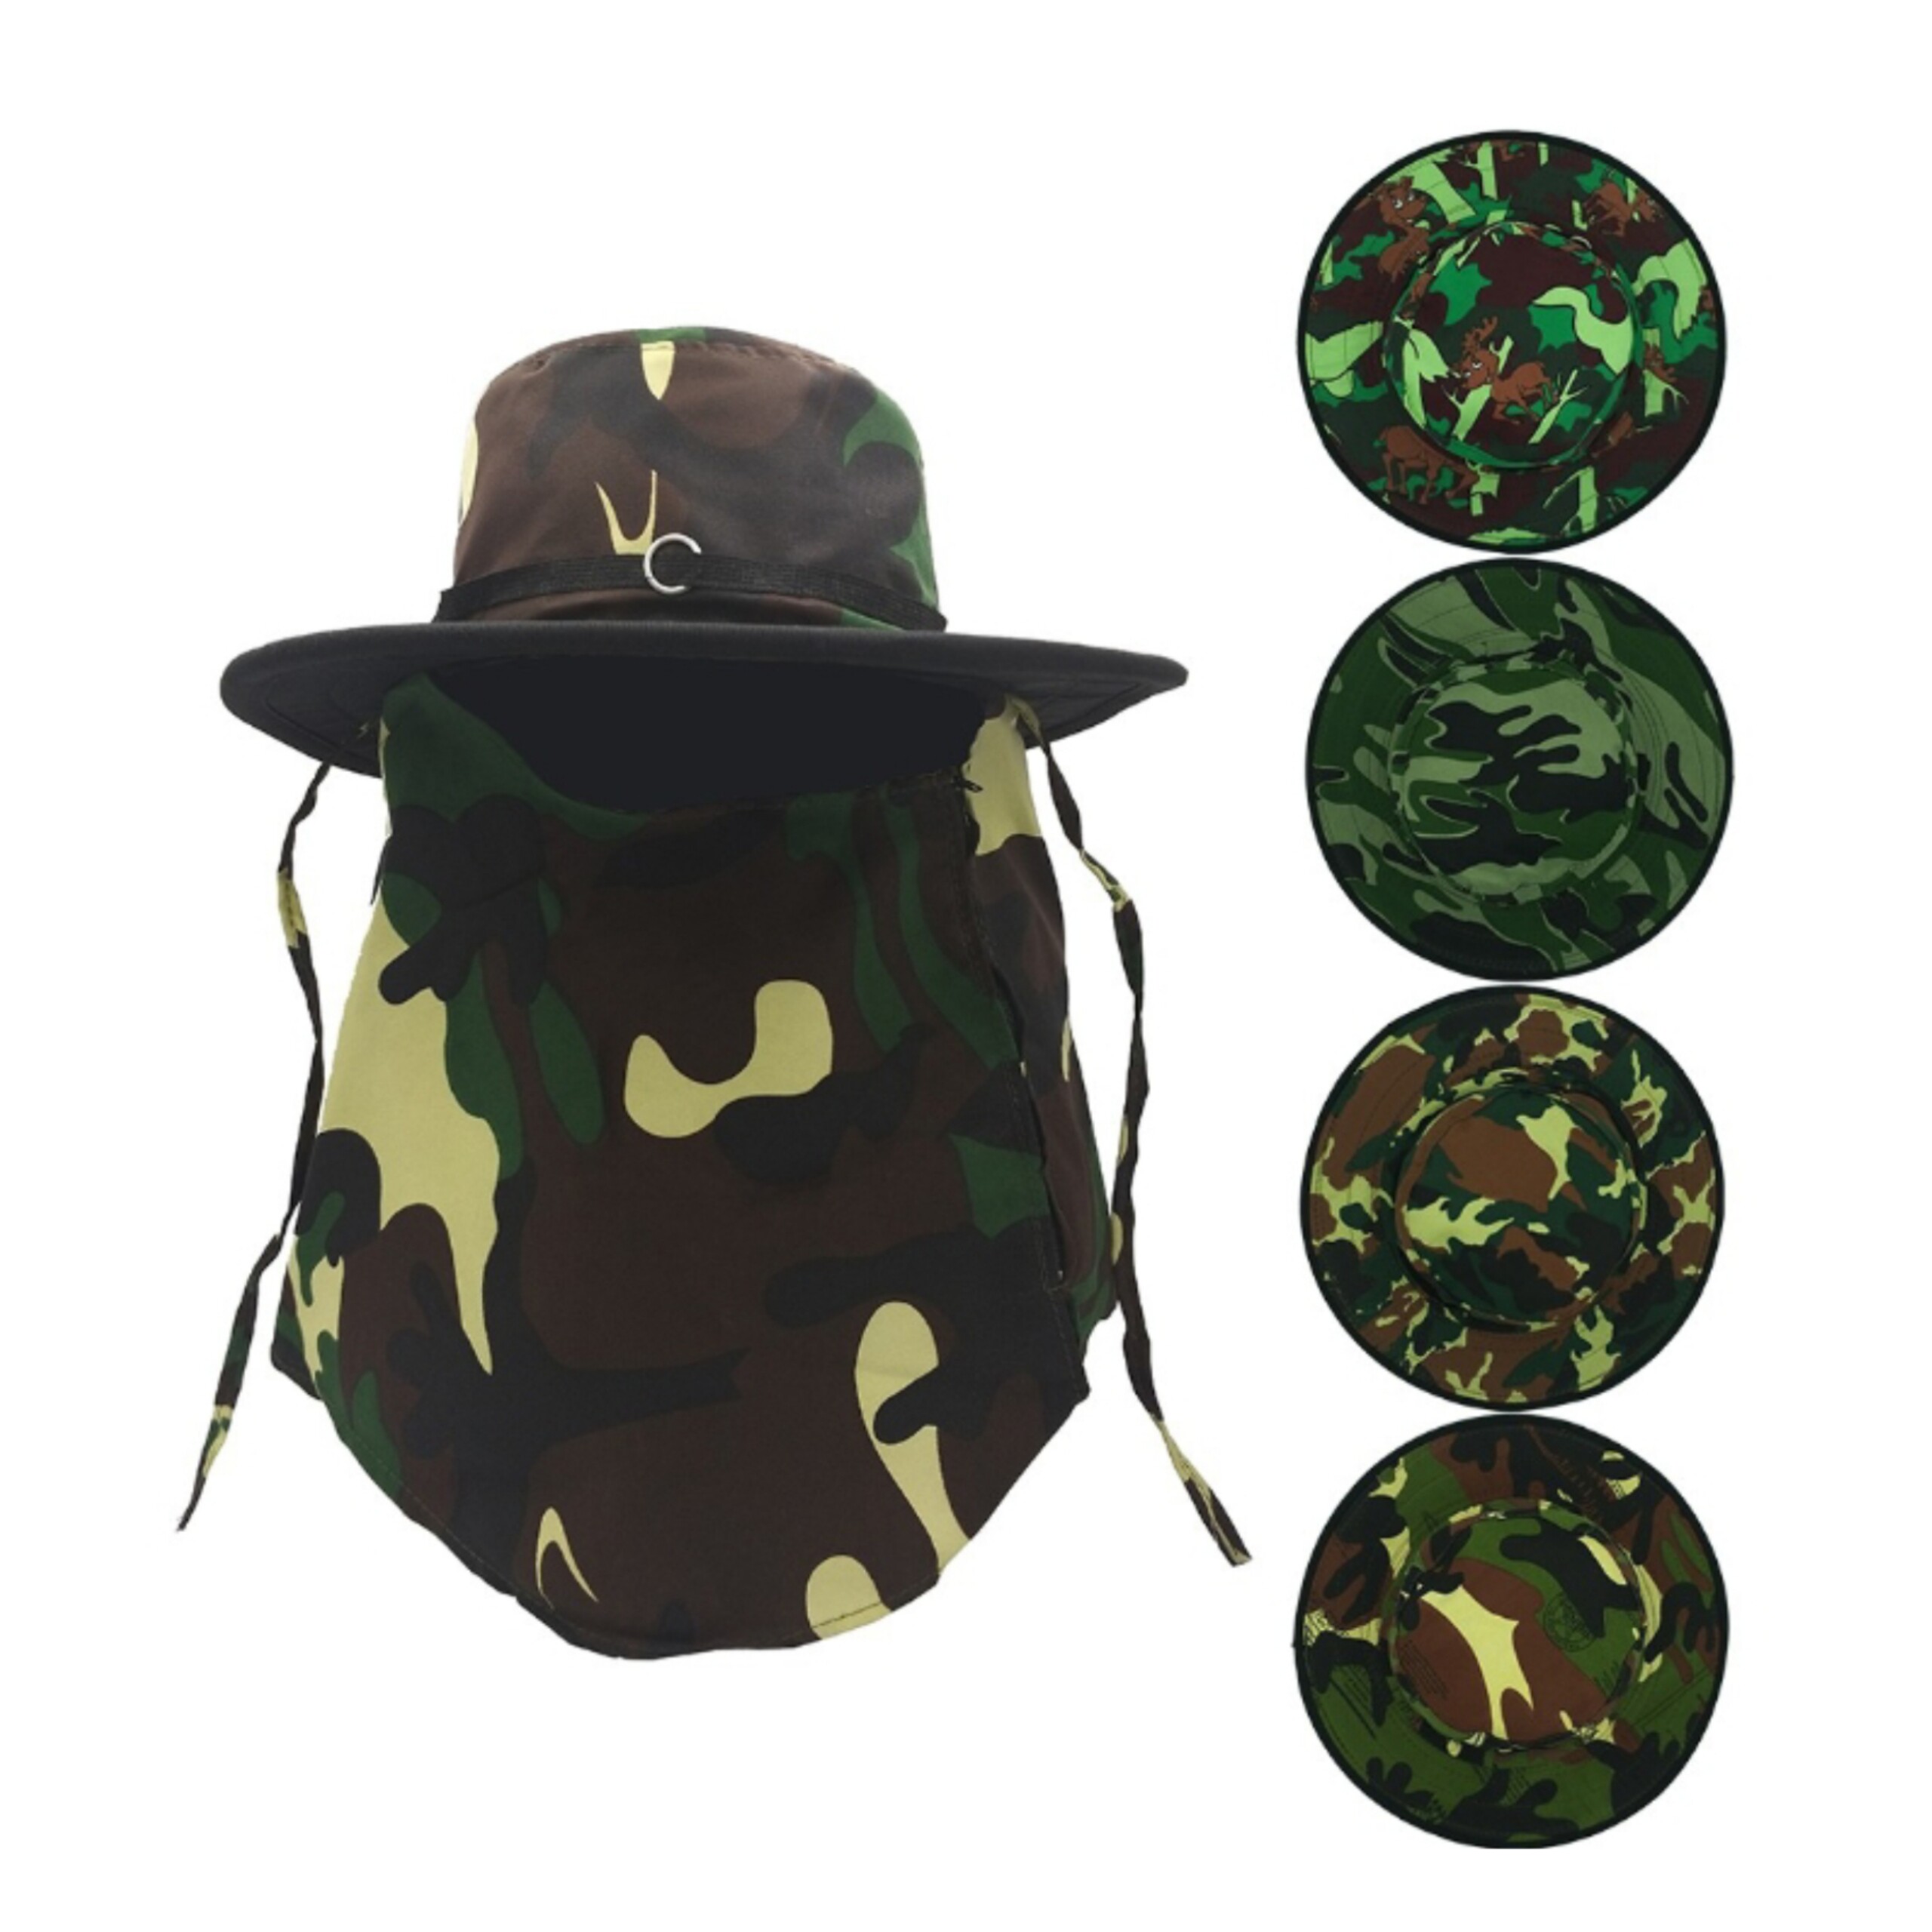 หมวกคลุมหน้าลายทหาร หมวกลายพราง อย่างดี หมวกคุมหน้า หมวกที่ใช้ในกิจกรรม ตกปลา/ทำไร่/ทำสวน กันแดดได้เป็นอย่างดี (คละลาย)